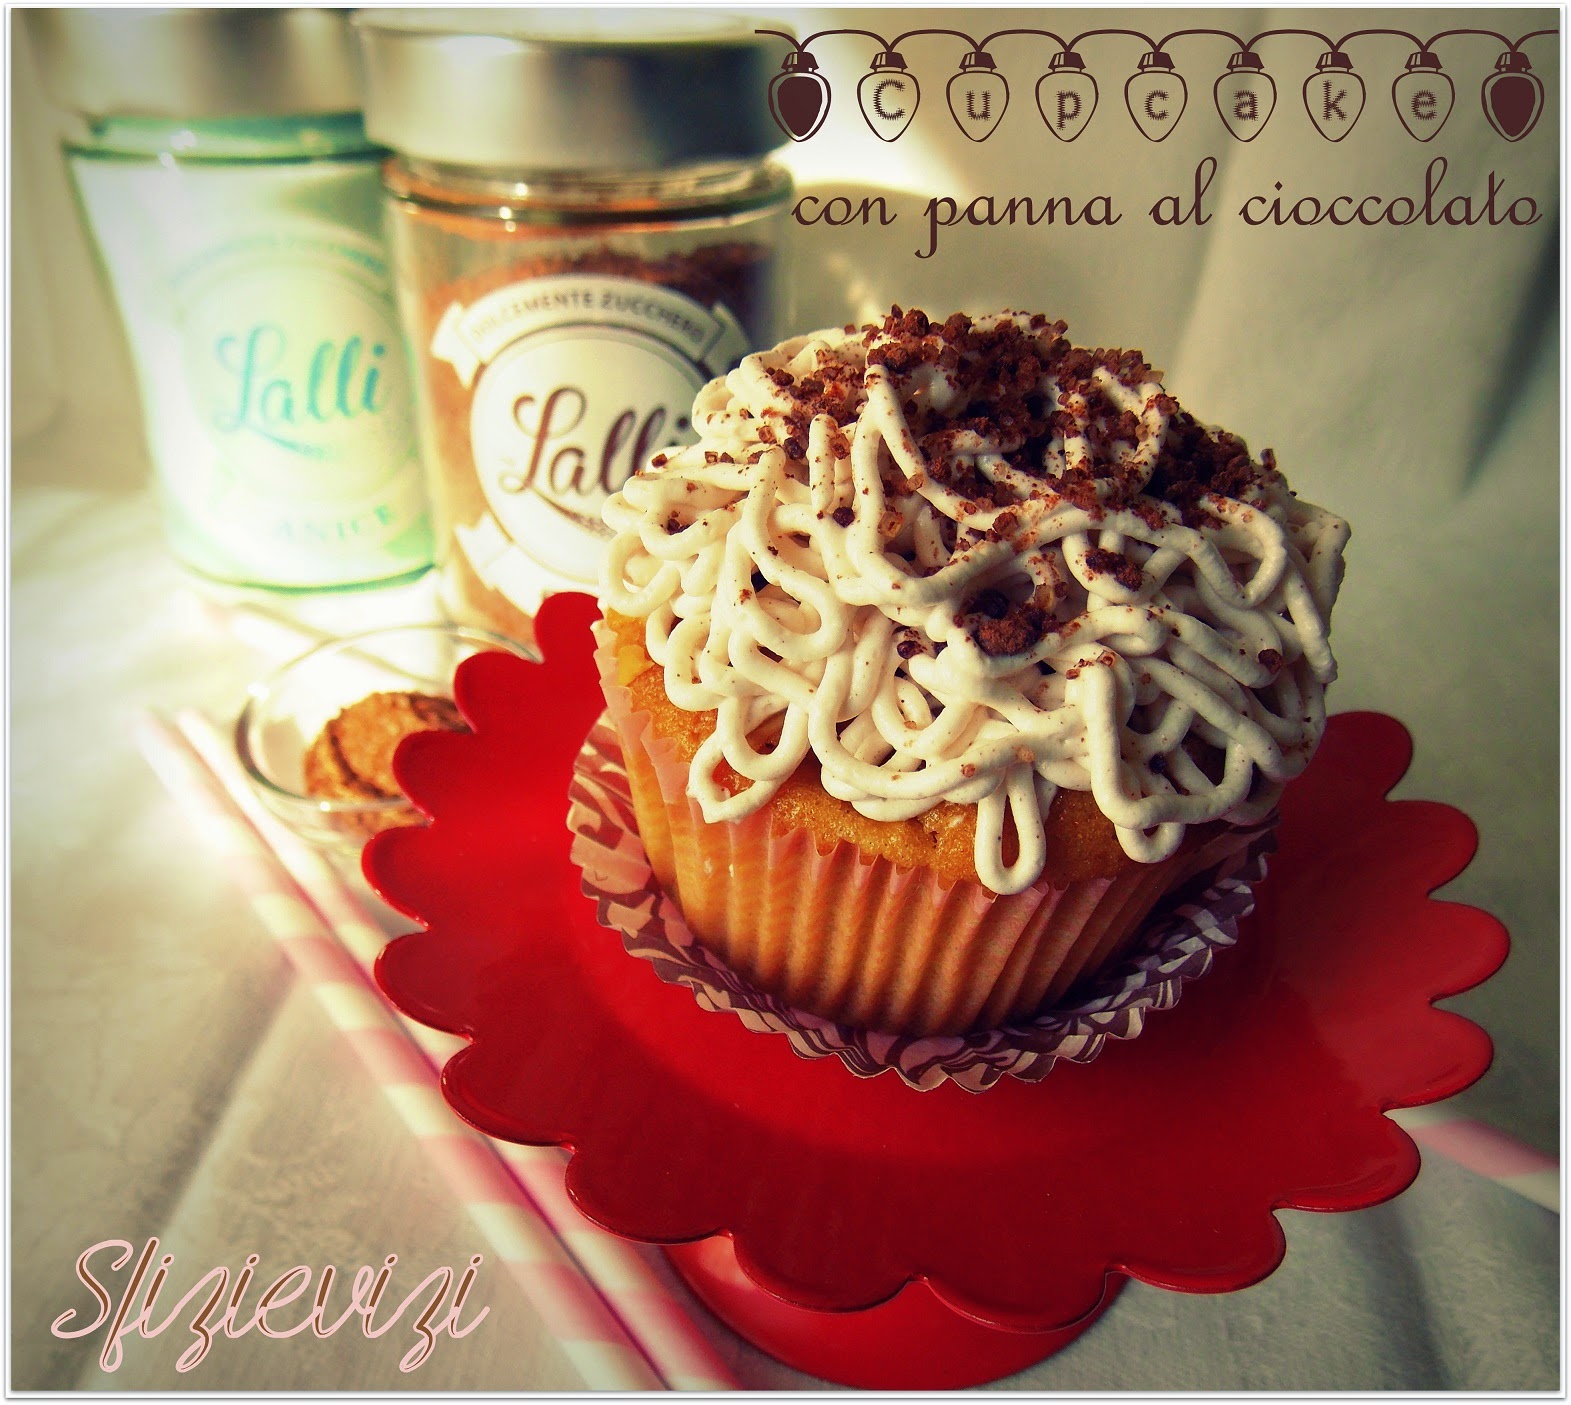 cupcake con panna al cioccolato - ricetta senza latticini -